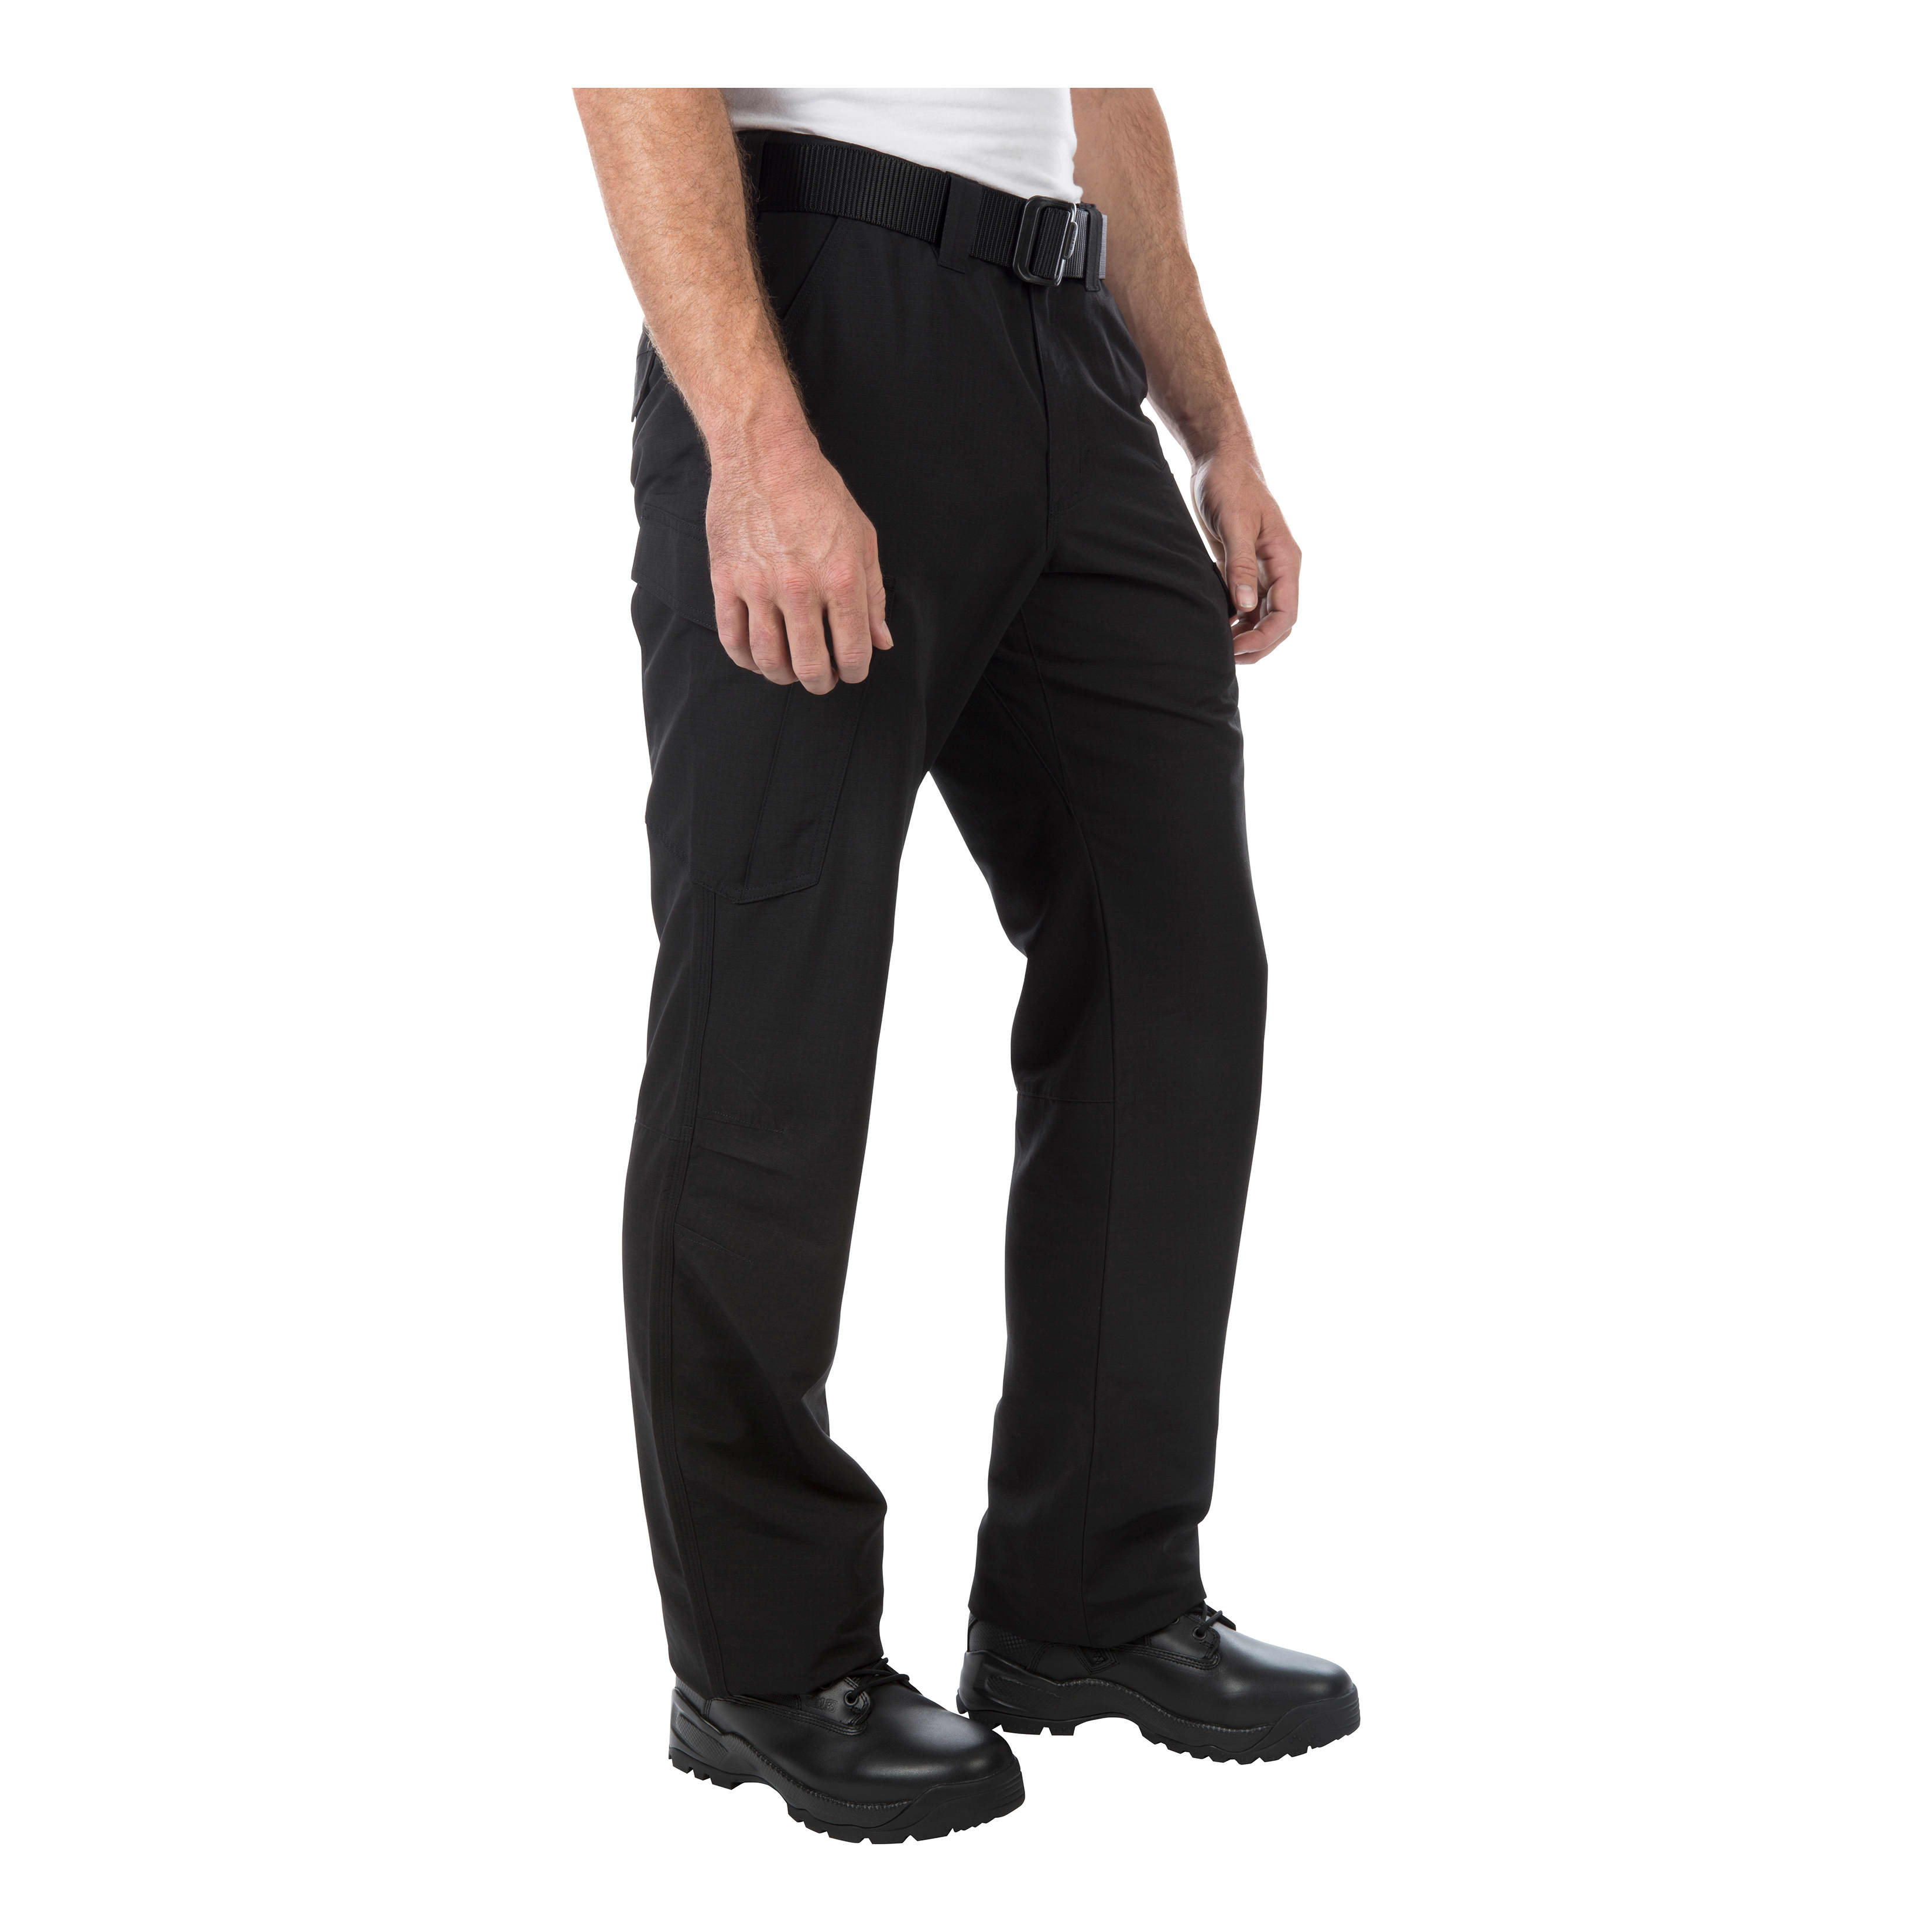  5.11 Tactical Men's Trail Pants - Slim-Fit Durable